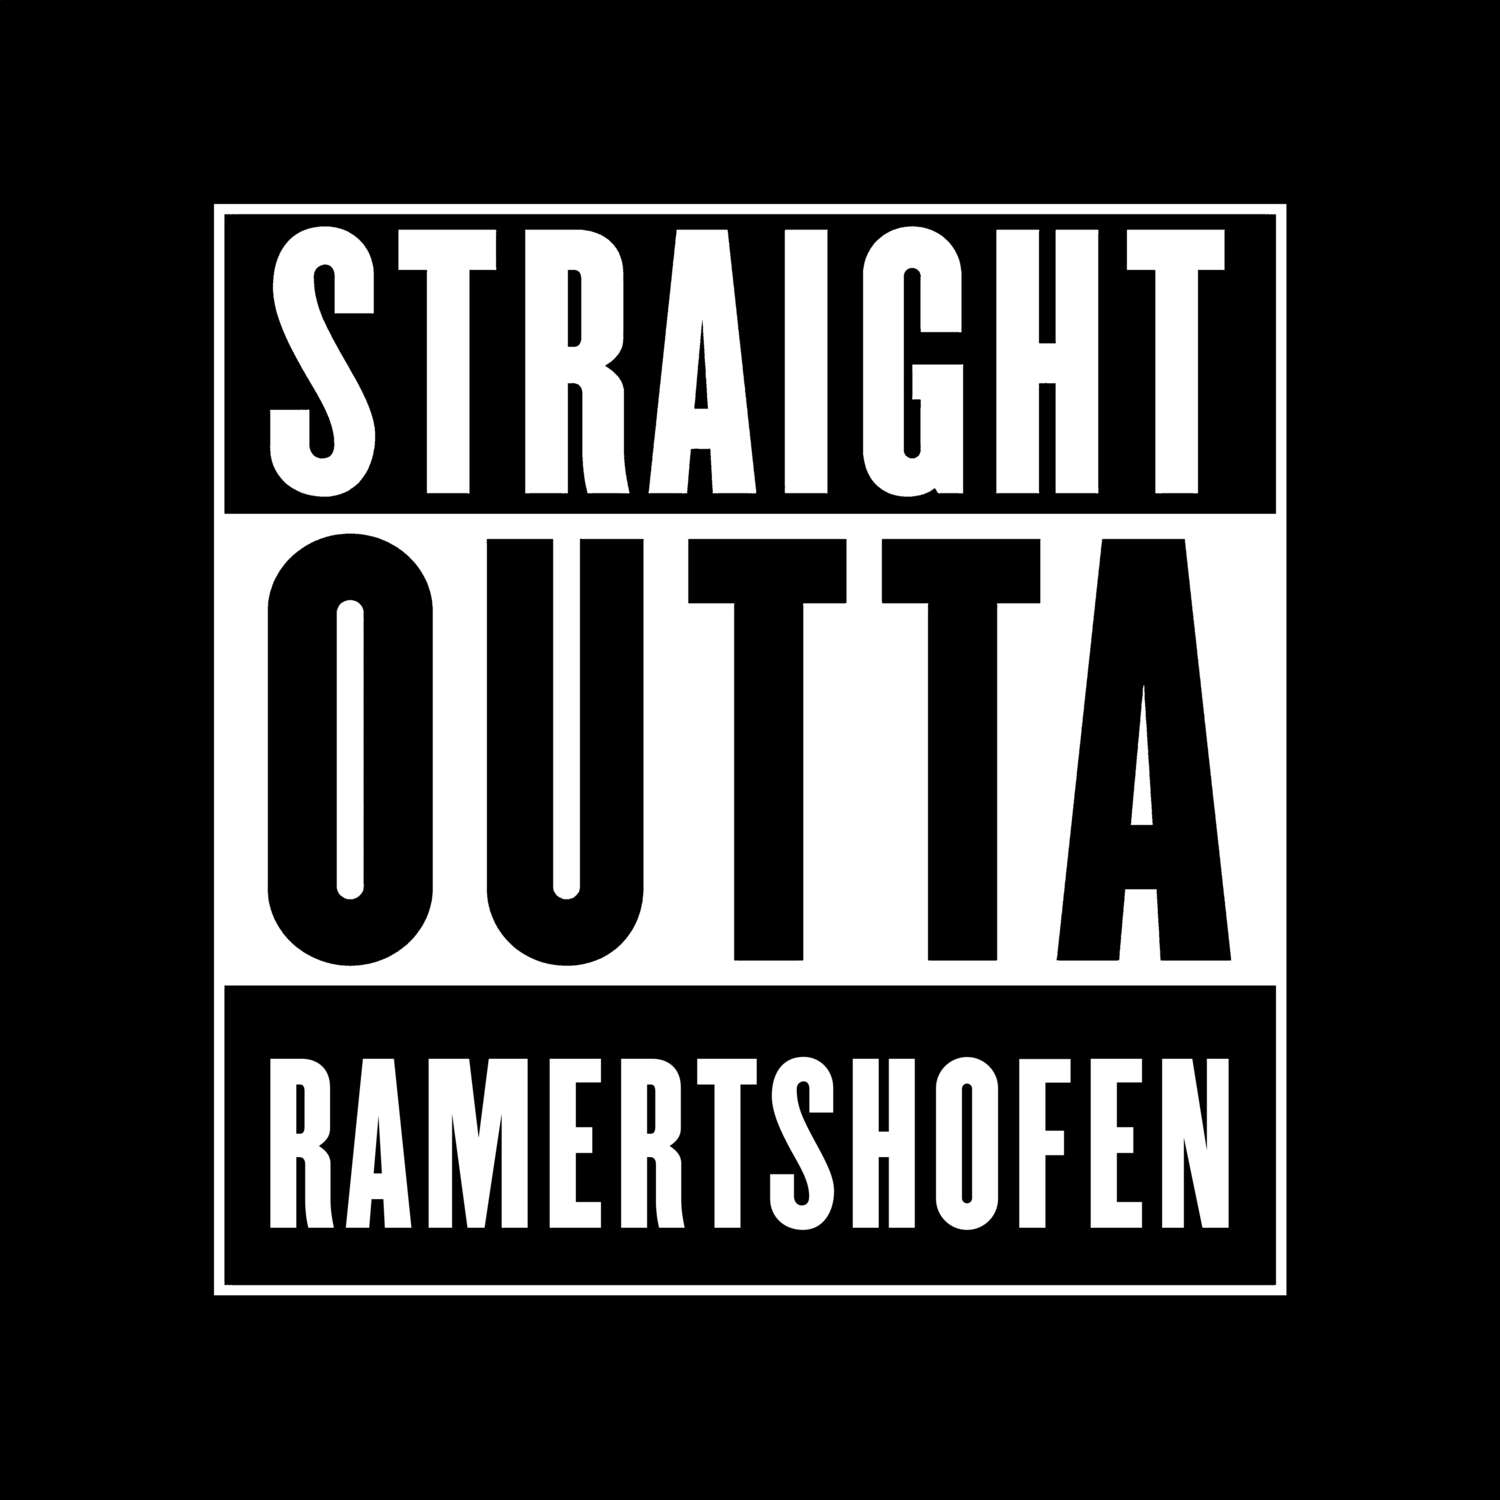 Ramertshofen T-Shirt »Straight Outta«